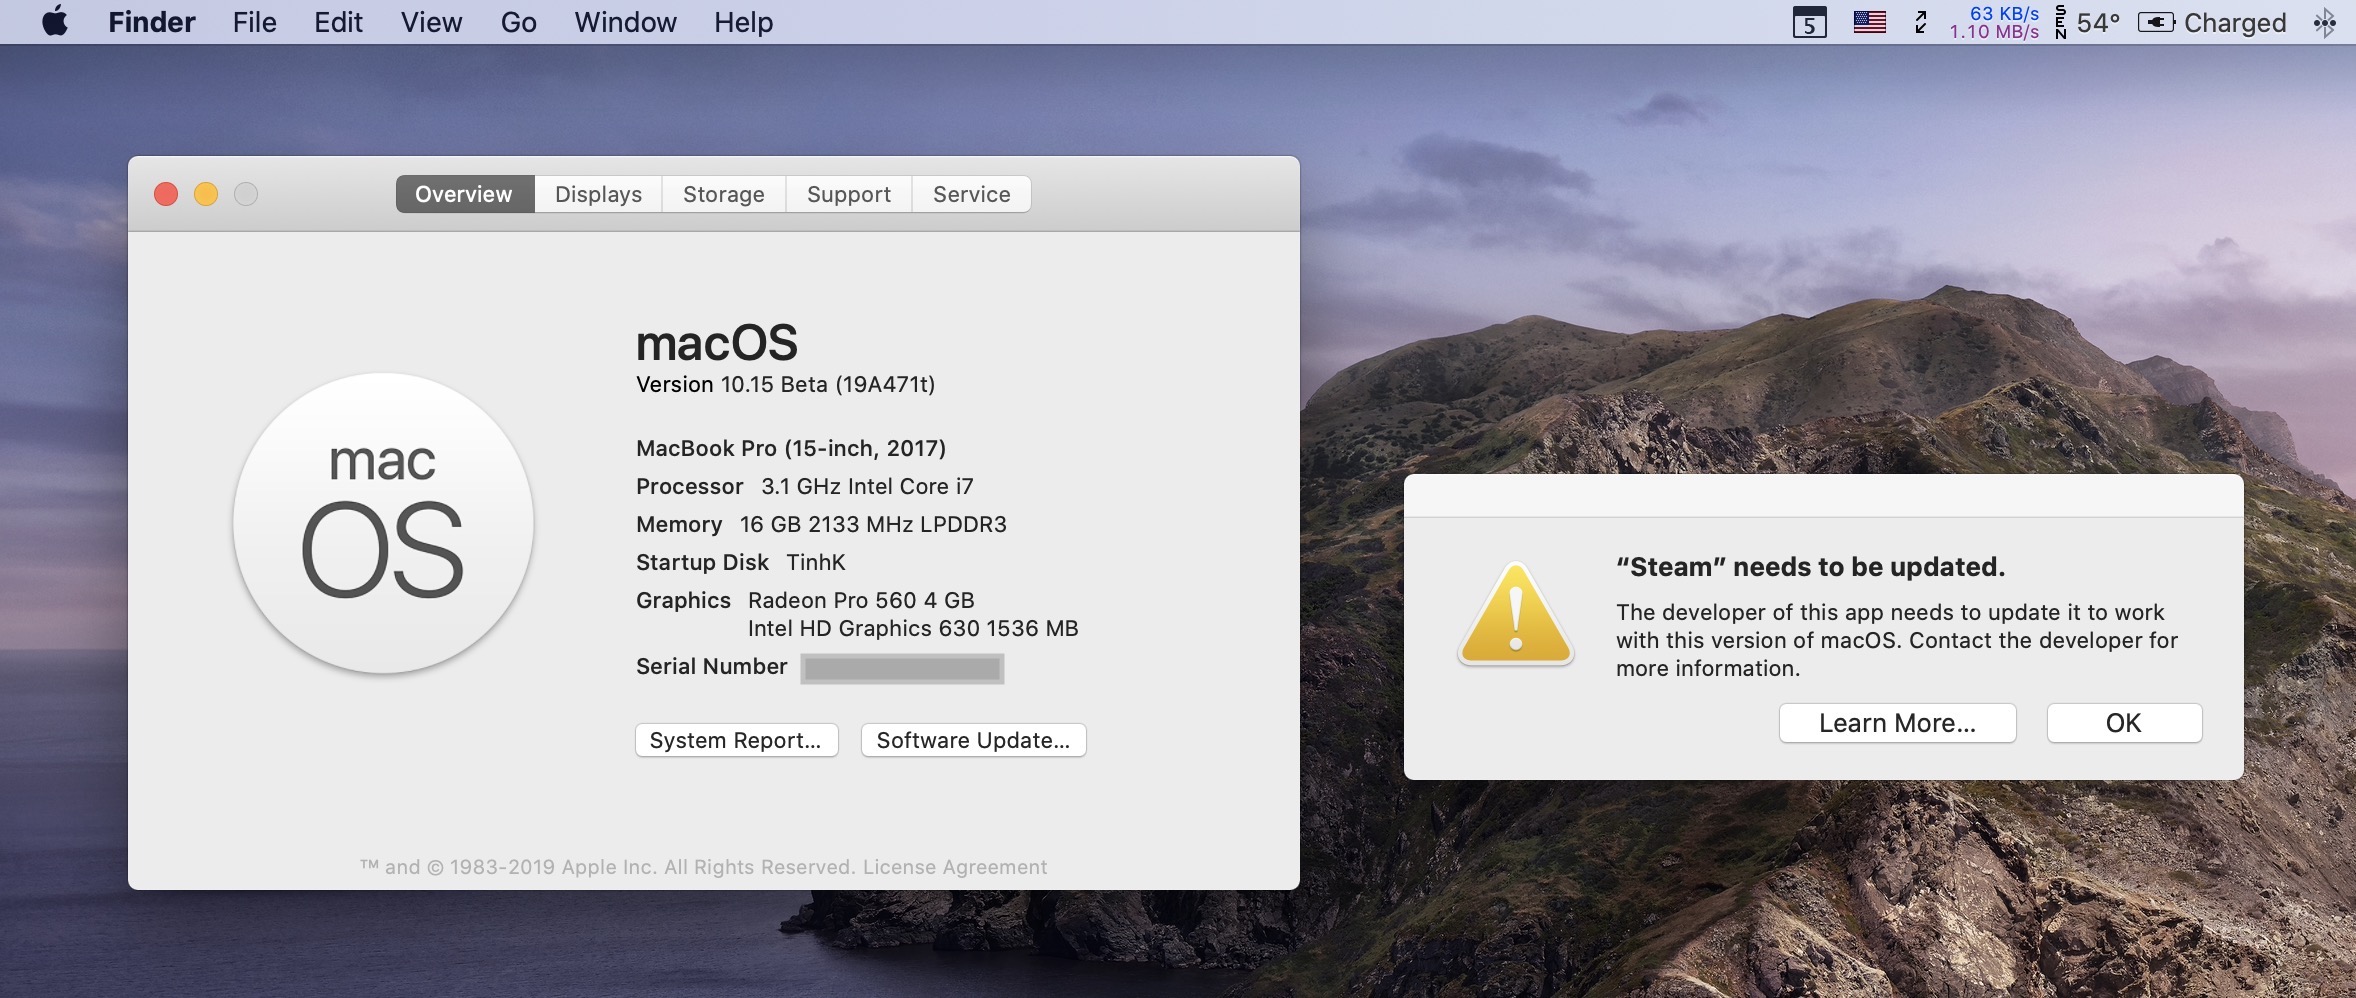 macOS Catalina chính thức ngừng hỗ trợ nền tảng 32-bit, nâng cấp sẽ không thể dùng Steam ngay lúc này